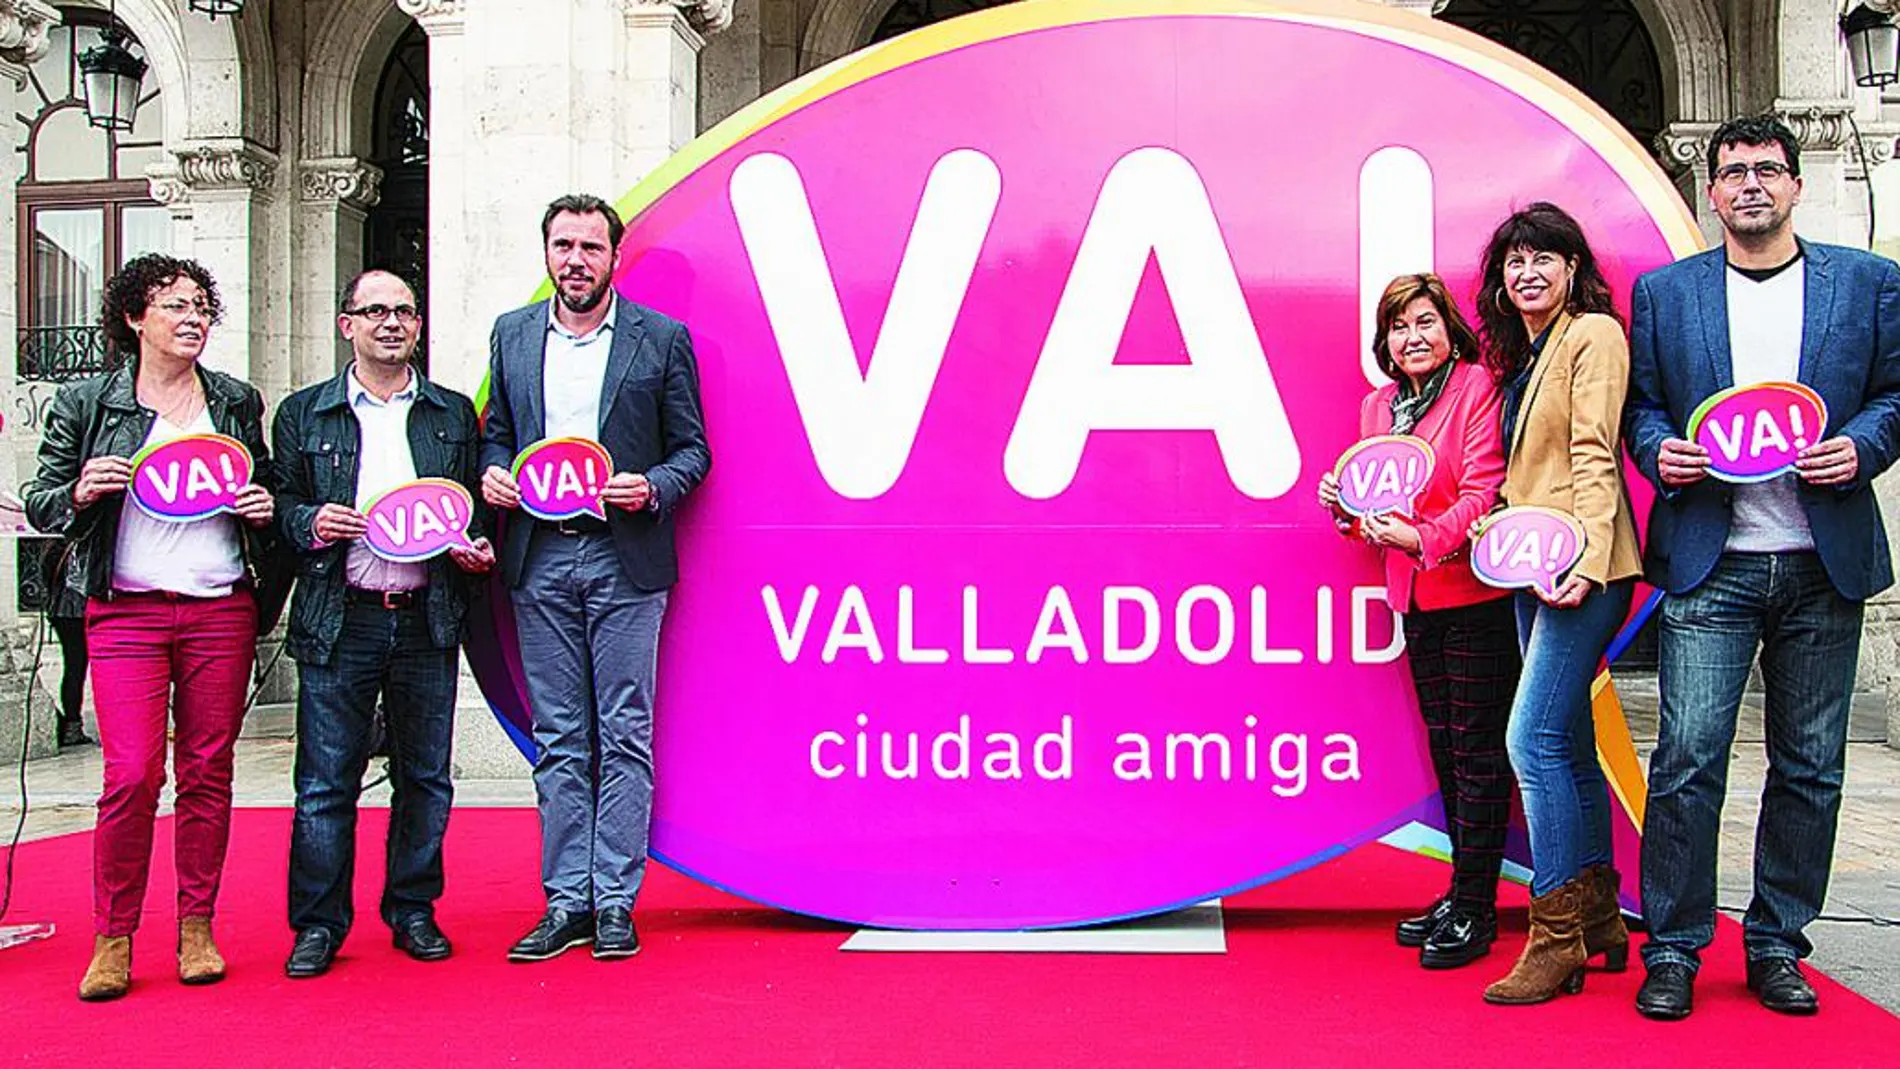 El alcalde de Valladolid. Óscar Puente, presenta la marca "Valladolid VA!"